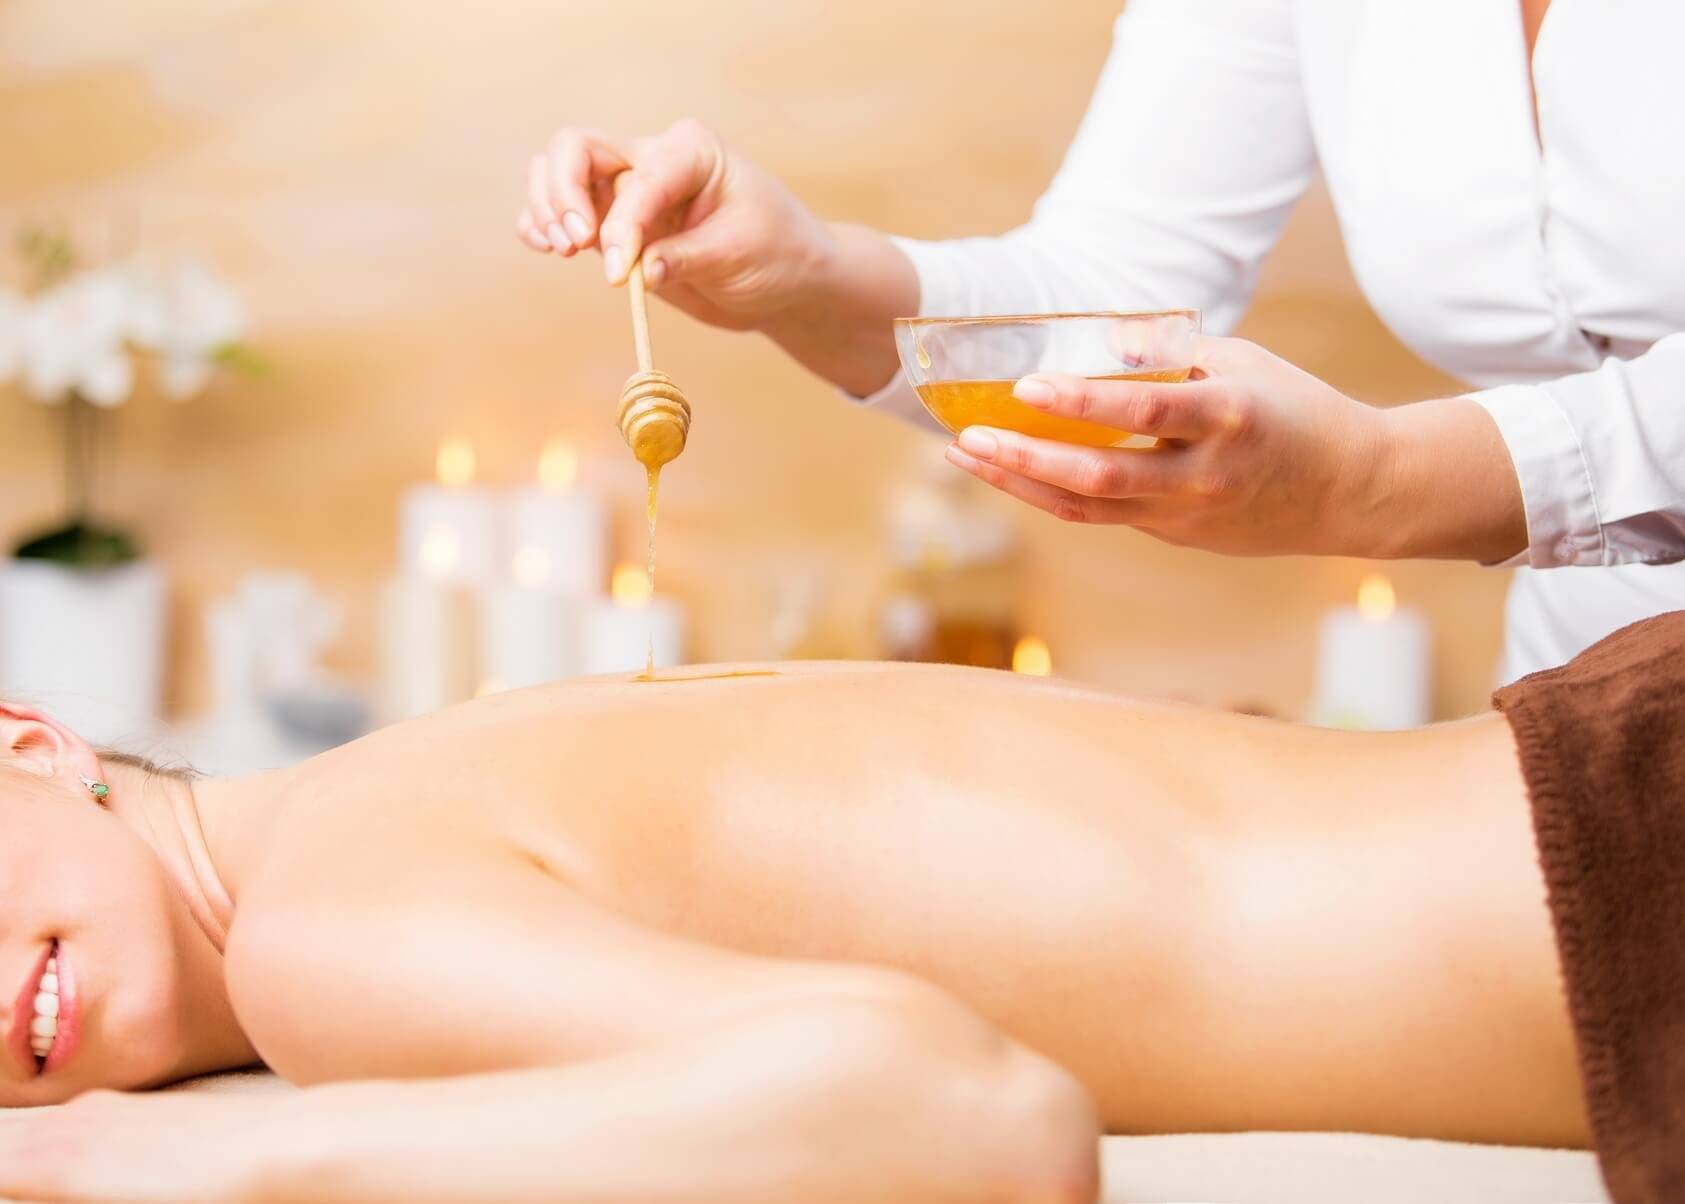 Медовый массаж антицеллюлитный: польза, противопоказания. эффект от массажа с медом